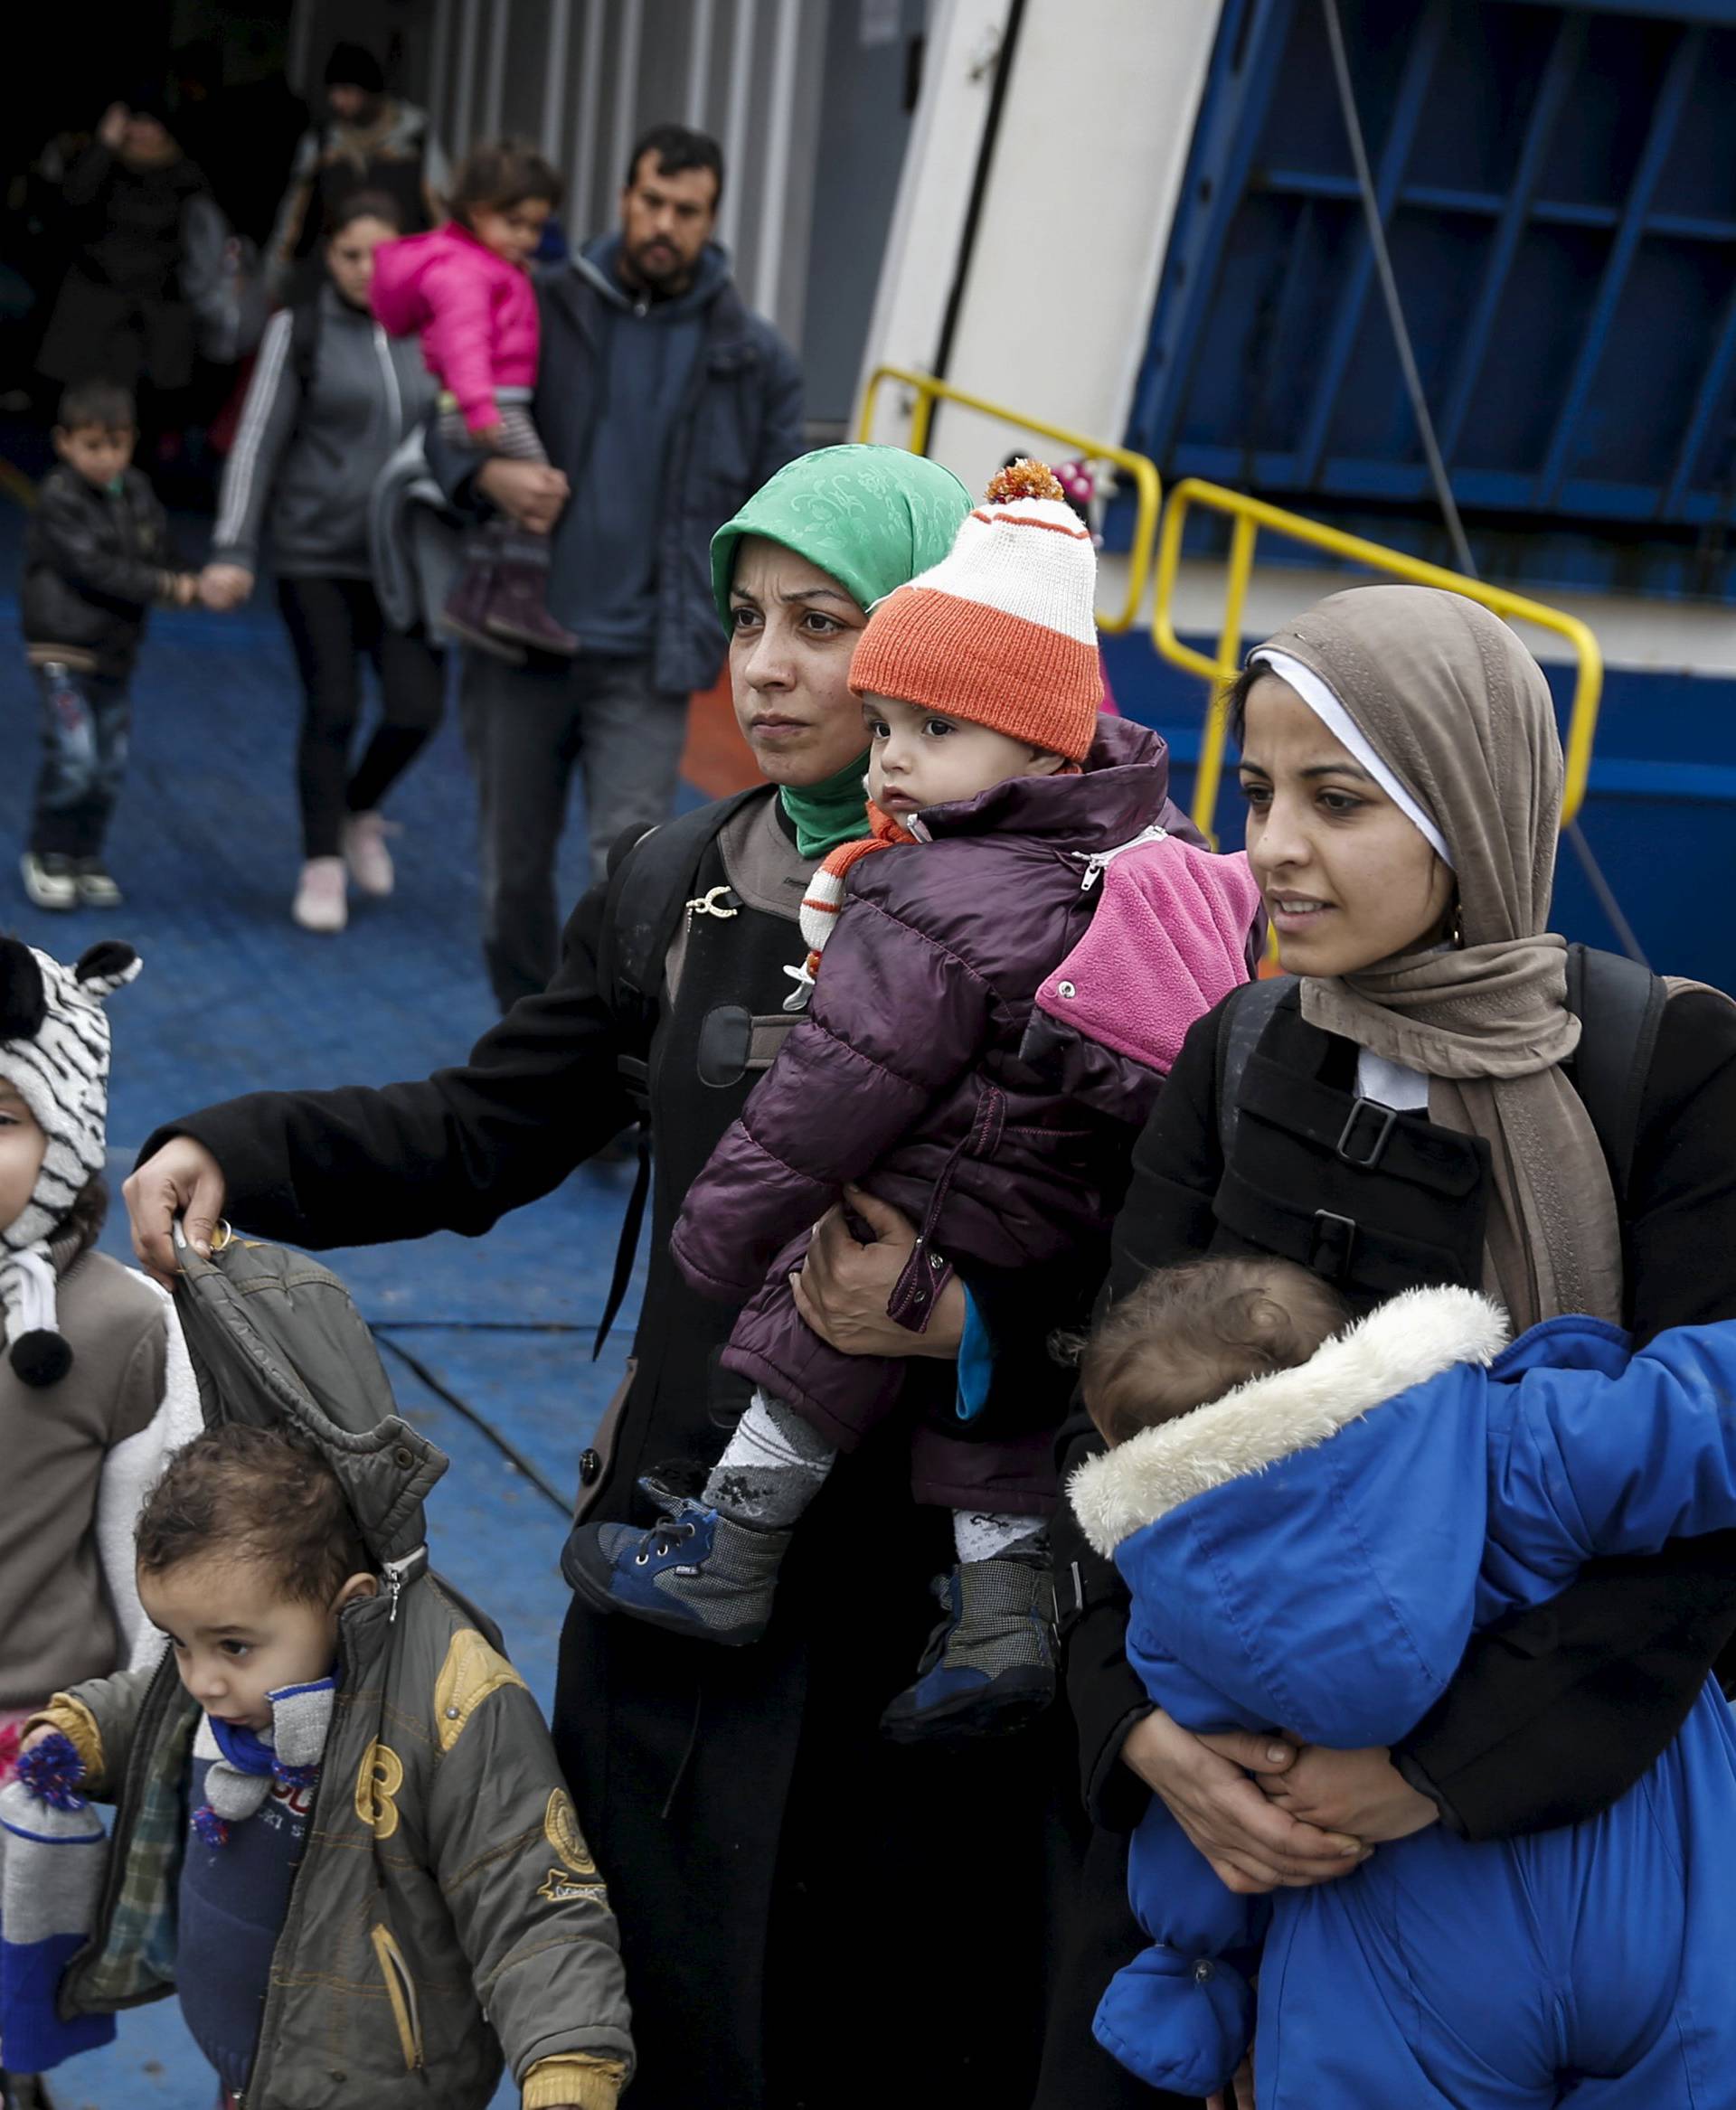 Sigurna zemlja: Grčka bi mogla slati tražitelje azila u Tursku